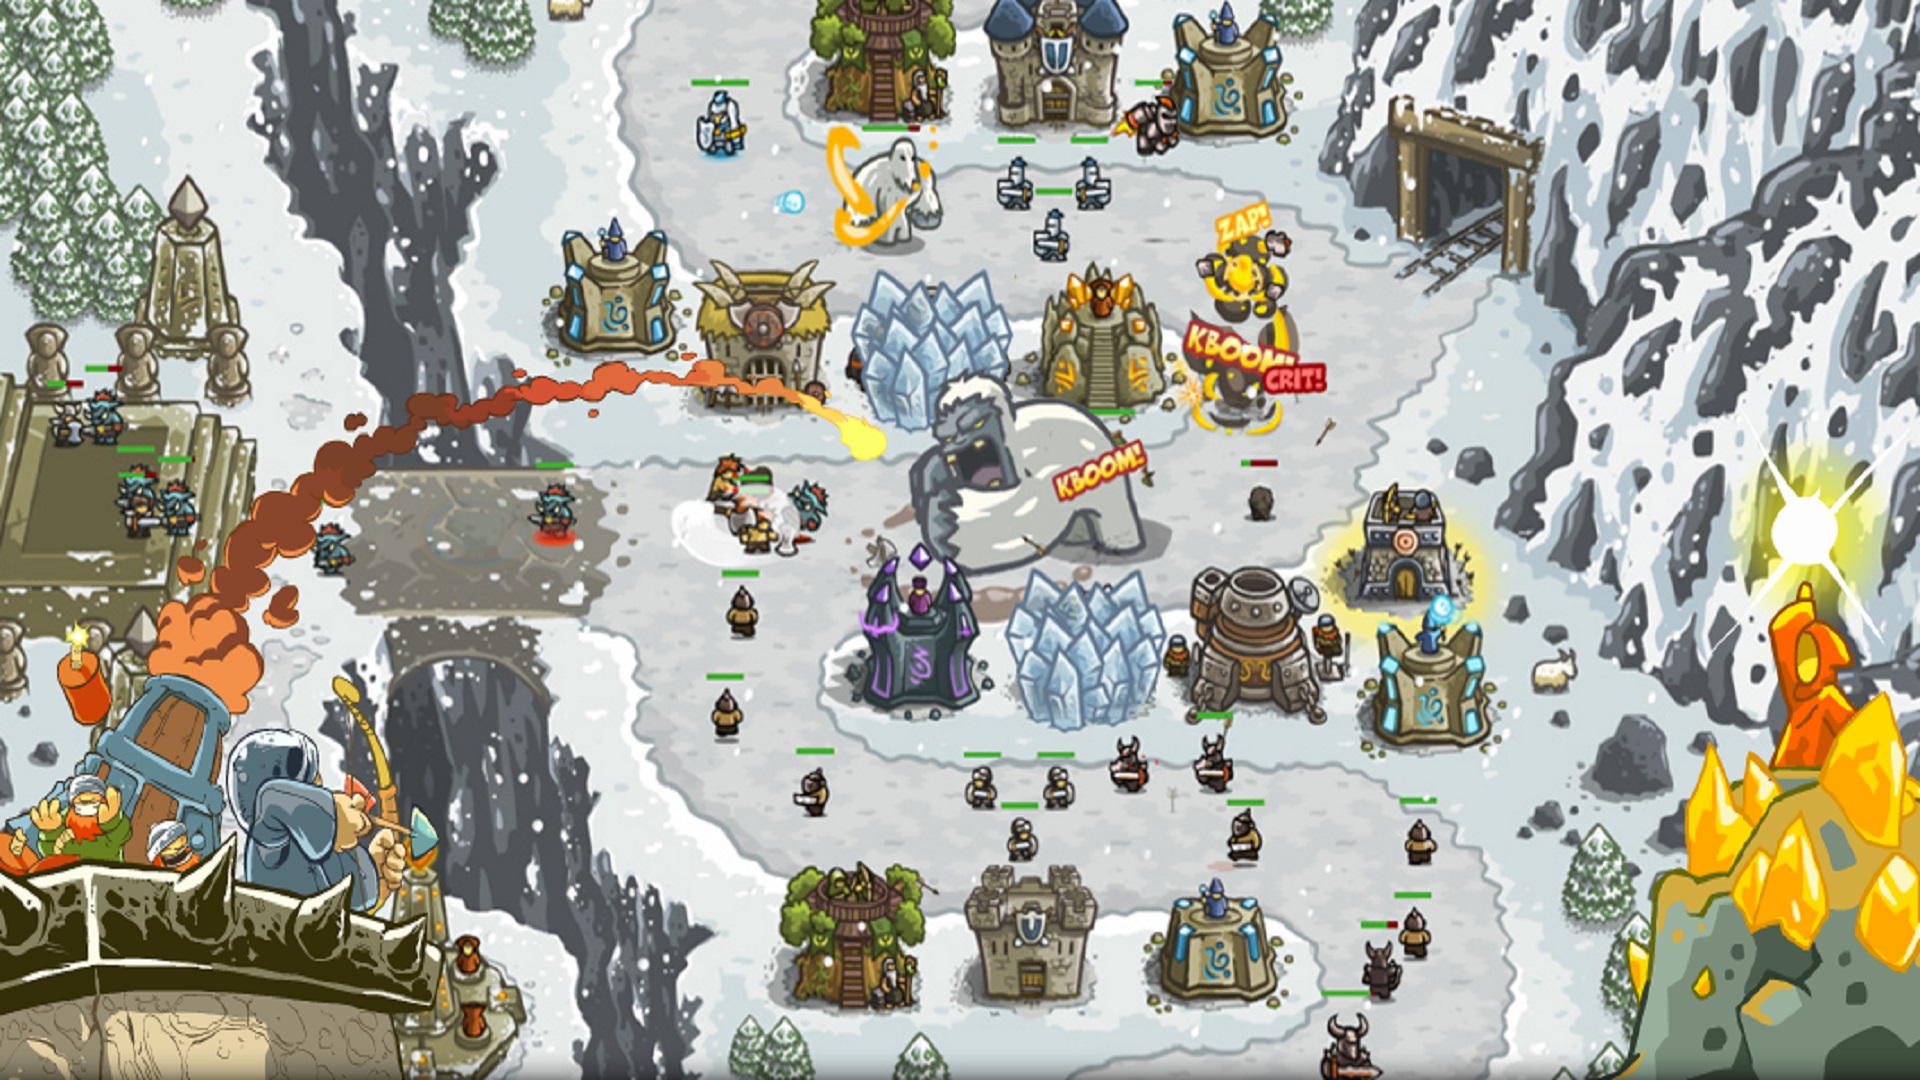 أفضل ألعاب الهاتف المحمول: Kingdom Rush. تظهر الصورة معركة تجري في الثلج